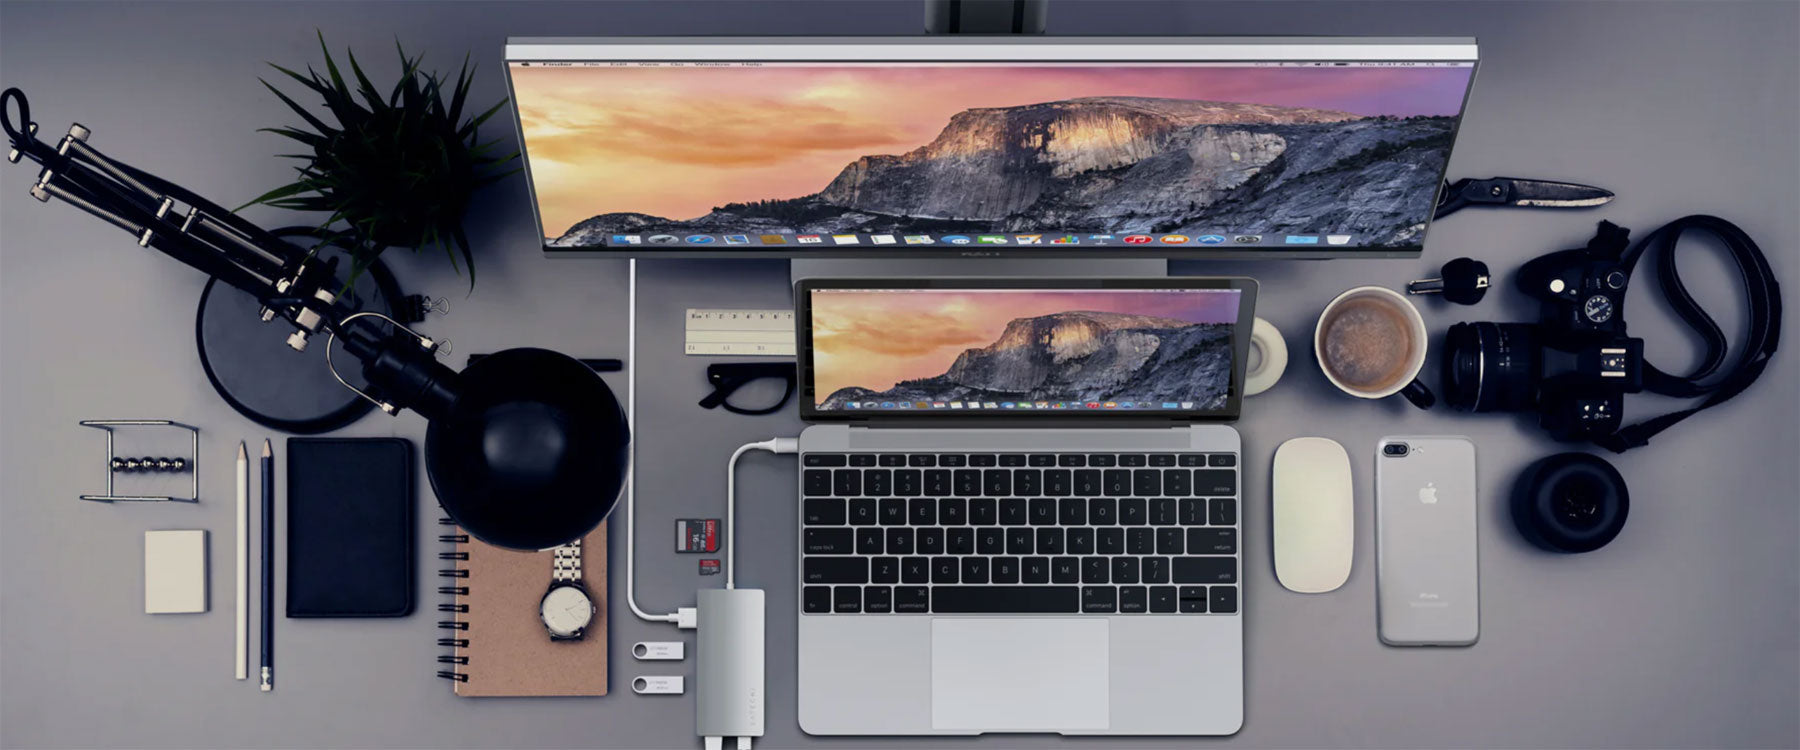 SATECHI - Premium Aluminium Adaptors & Accessories For MacBook